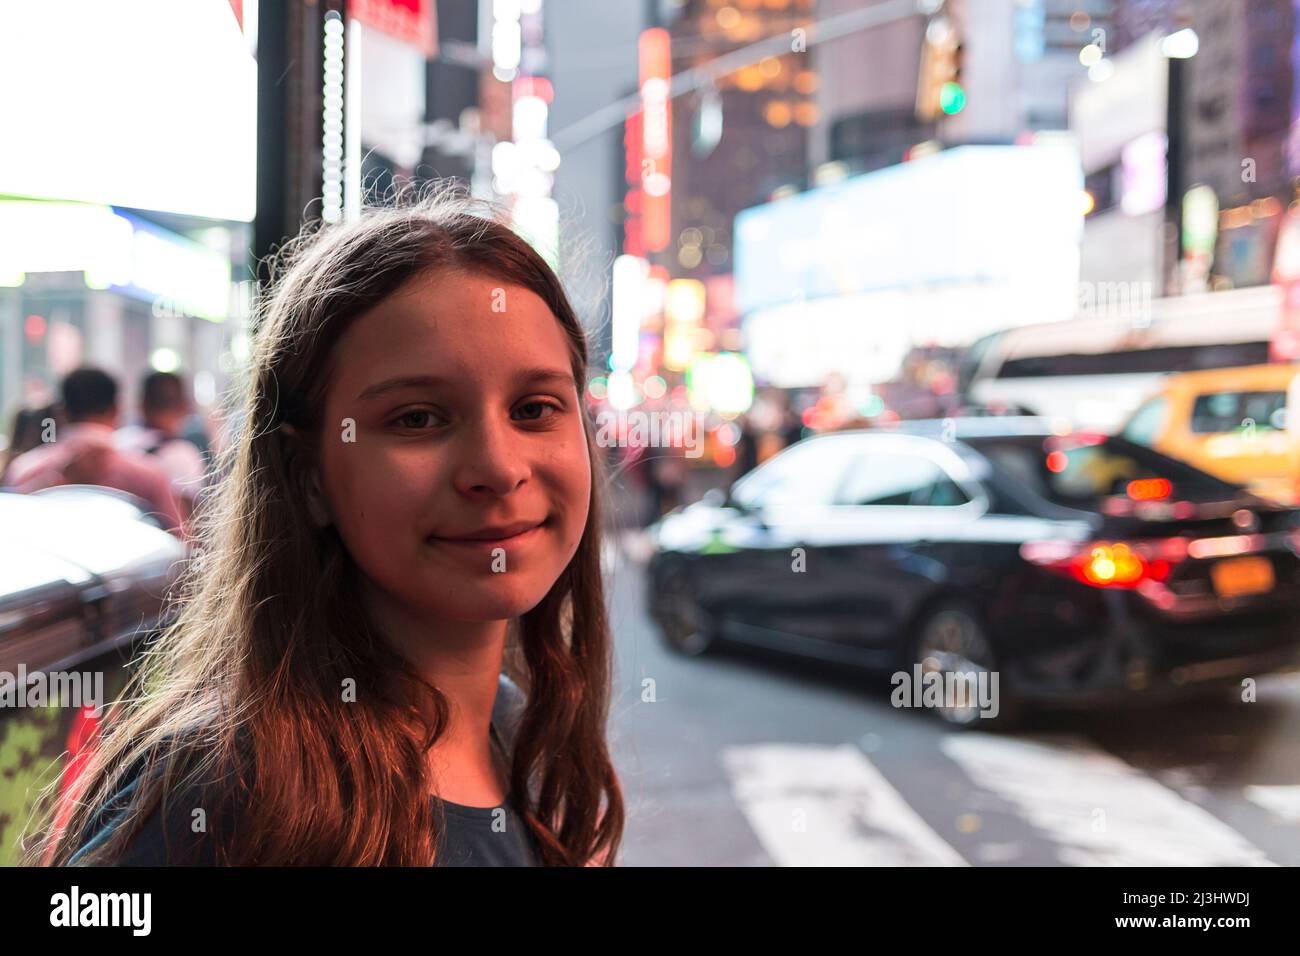 49 Street New York City Ny Usa 14 Jahre Alt Kaukasische Teenager Mädchen Mit Braunen Haaren